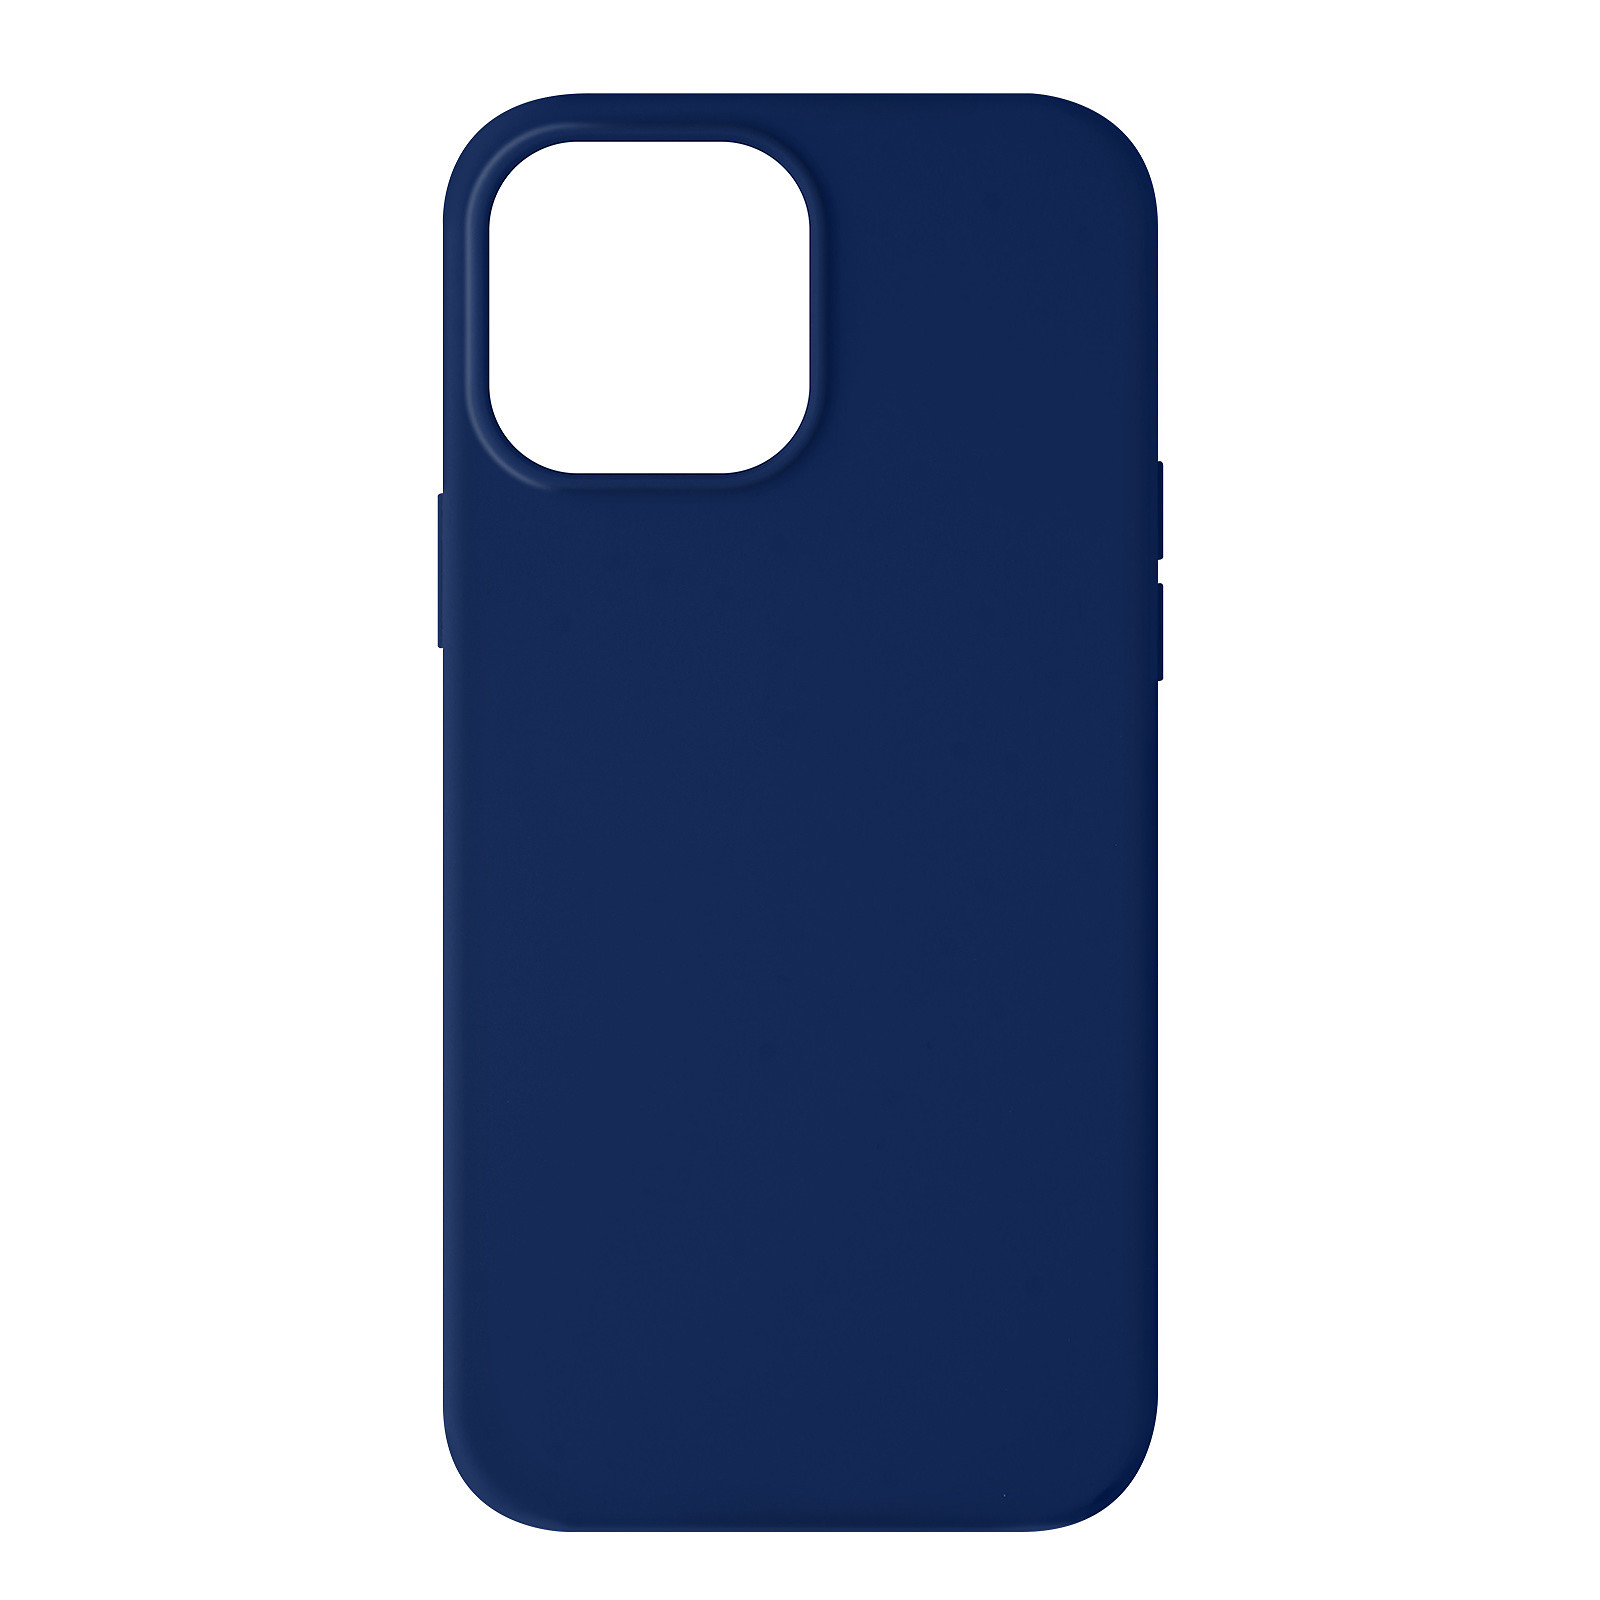 Avizar Coque pour iPhone 13 Pro Max Silicone Semi-rigide Finition Soft-touch Bleu roi - Coque telephone Avizar